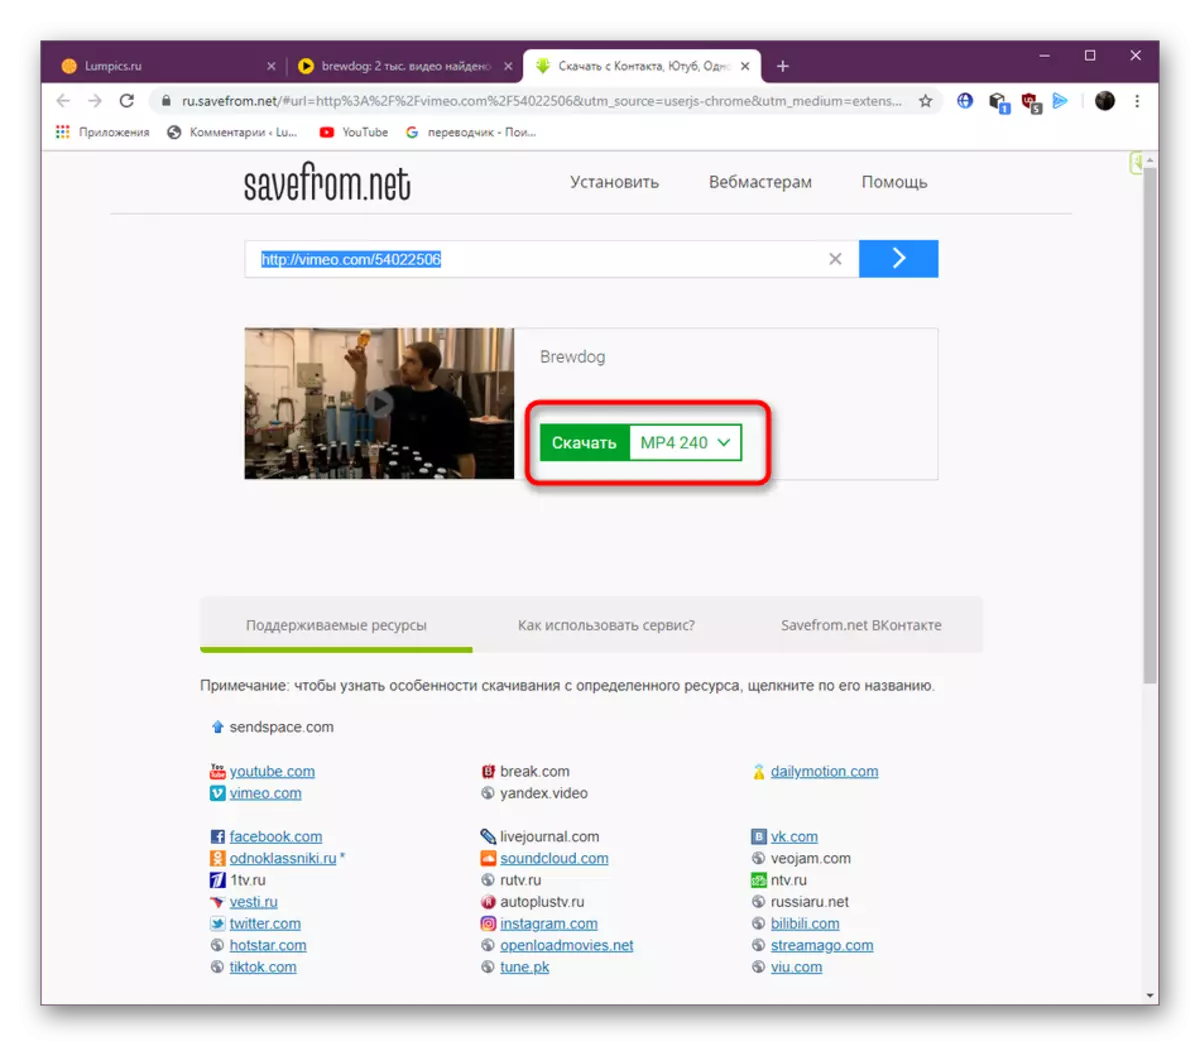 Yandex.video کے ذریعے ویڈیو ڈاؤن لوڈ کرنے کے لئے ایک فارمیٹ منتخب کرنے کے لئے ایک فارمیٹ منتخب کریں جب ایک پلگ ان میں savefrom.net کا استعمال کرتے ہوئے